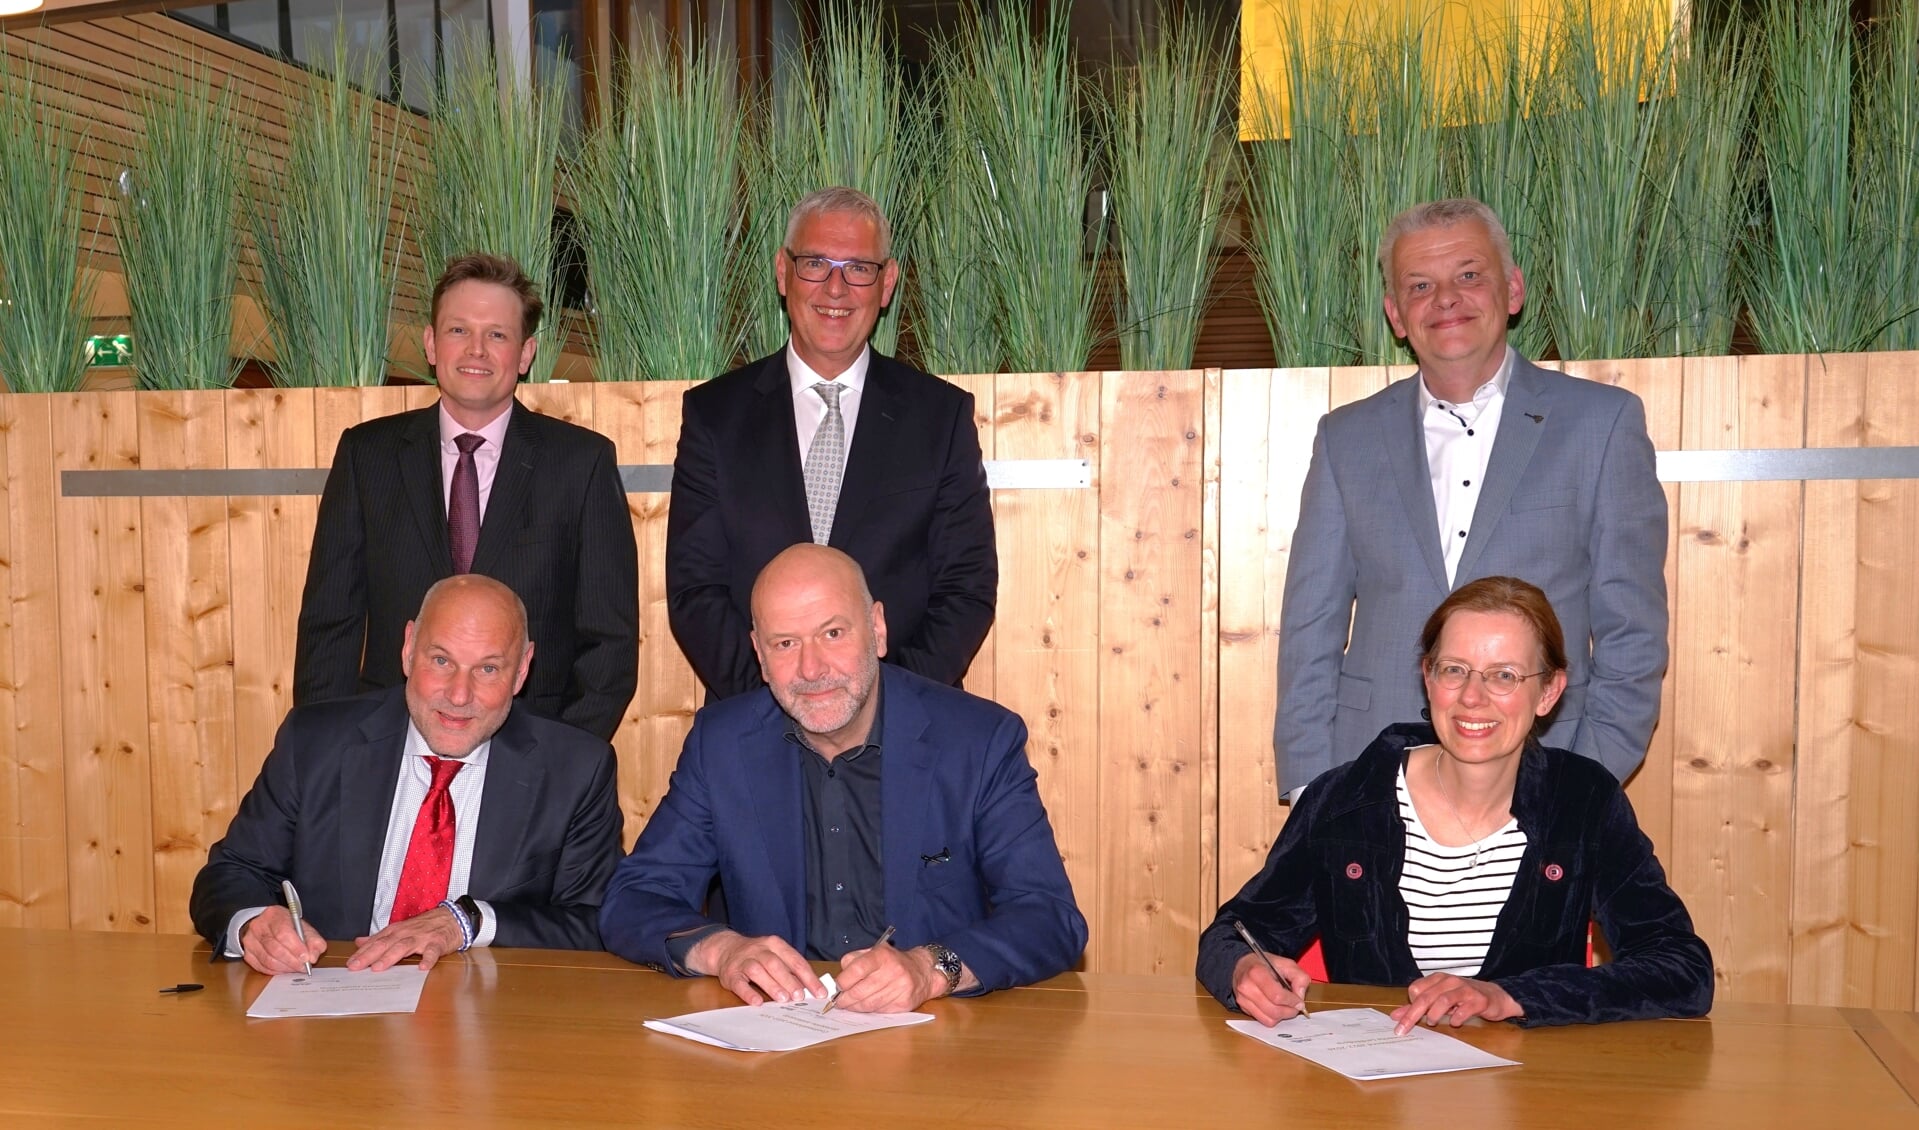 De fractievoorzitters van de coalitiepartijen ondertekenen het coalitieakkoord, de beoogde wethouders - die enkele uren later officieel benoemd werden - staan achter hen. V.l.n.r. Olaf McDaniel en Bob Vastenhoud van PvdA-GroenLinks, Hugo Langenberg en Herman Romeijn van de LPL en Medea Hempen en Daan Binnendijk van het CDA. 